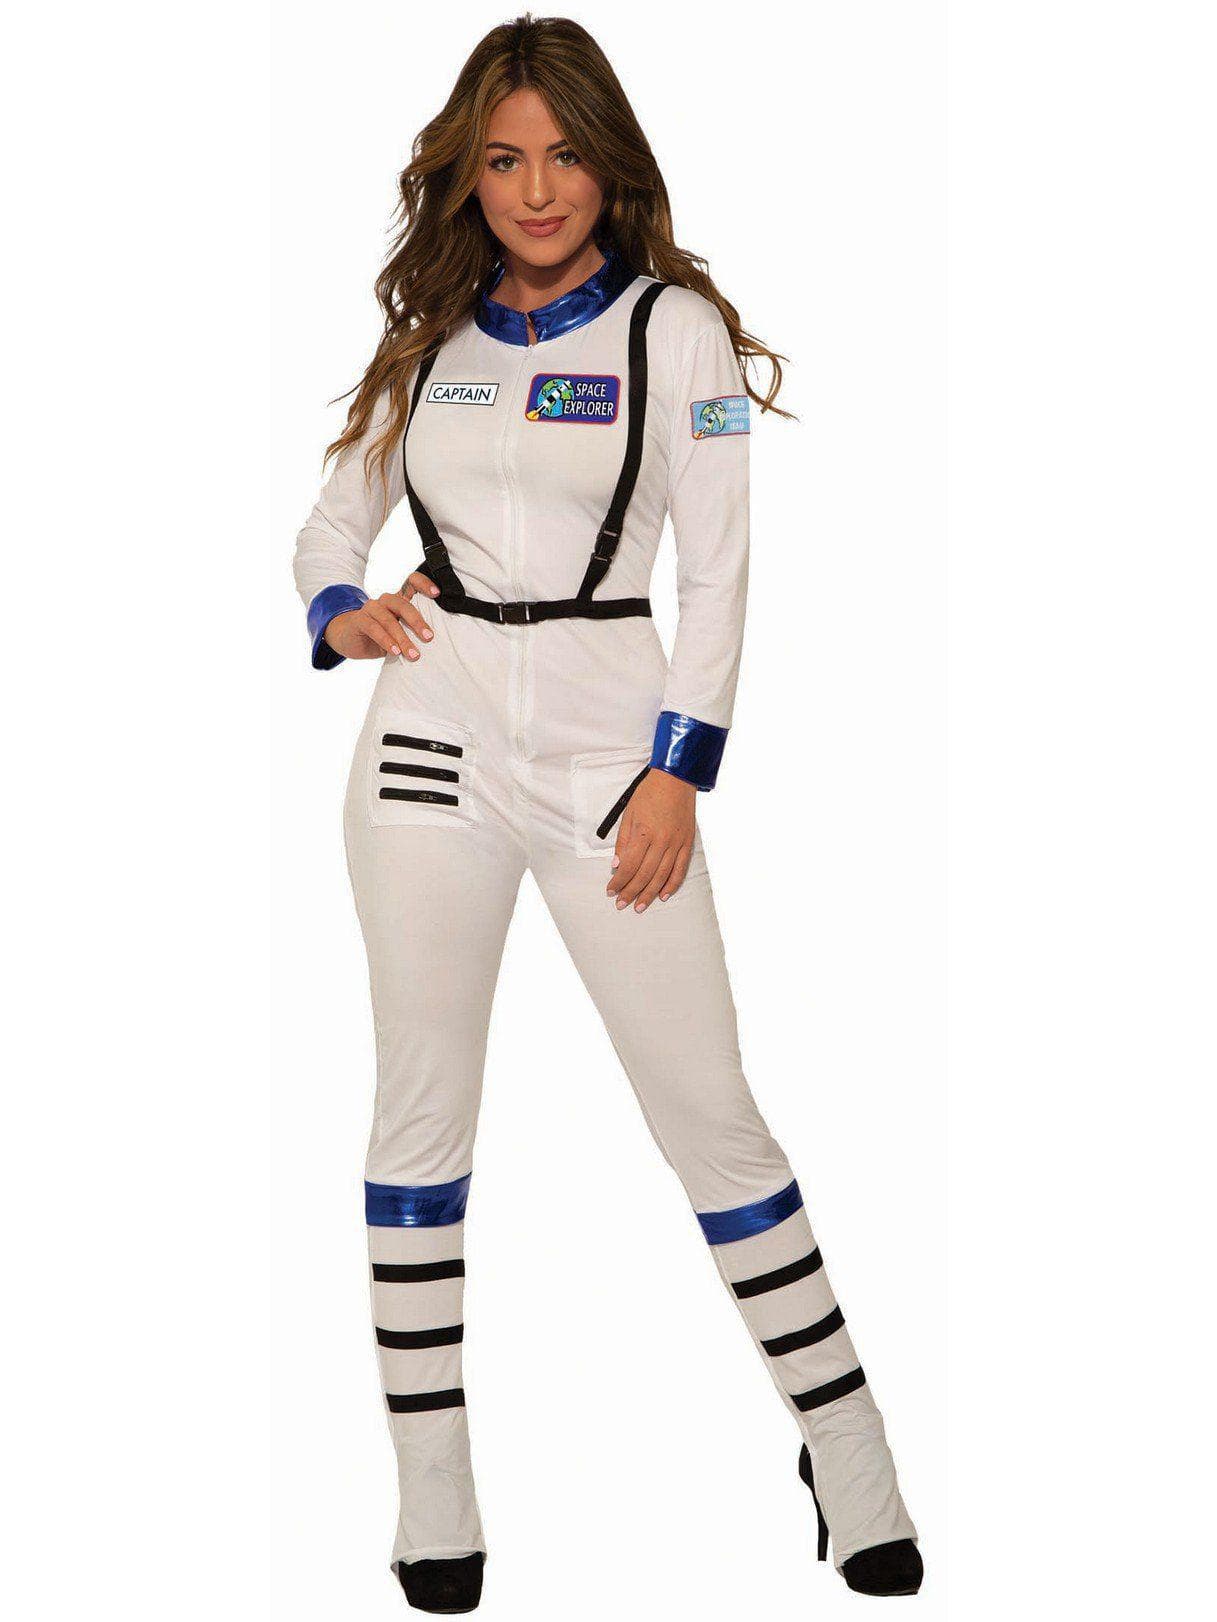 Adult Astronaut Costume - costumes.com